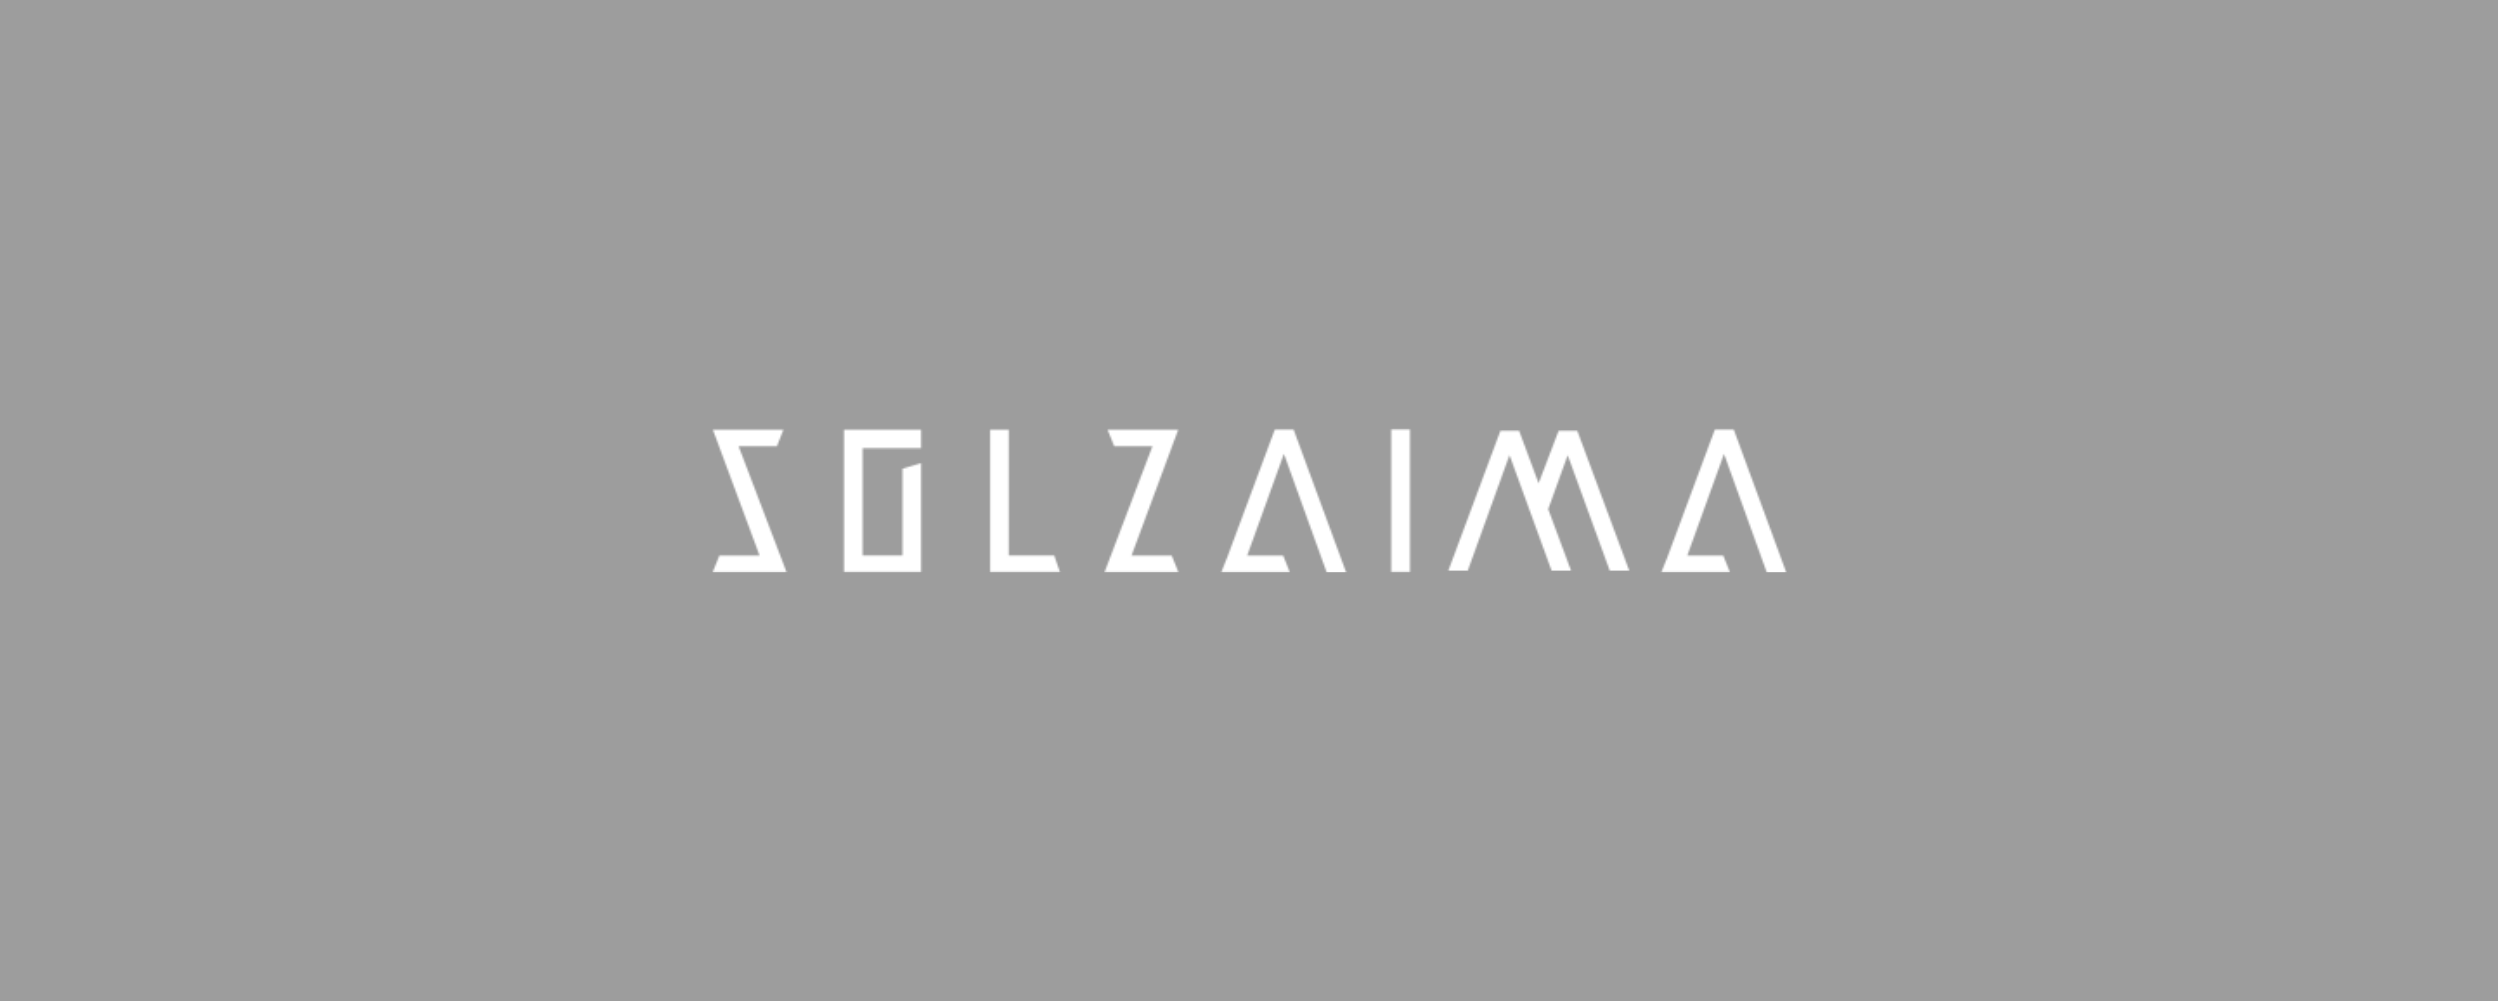 Logo Solzaima